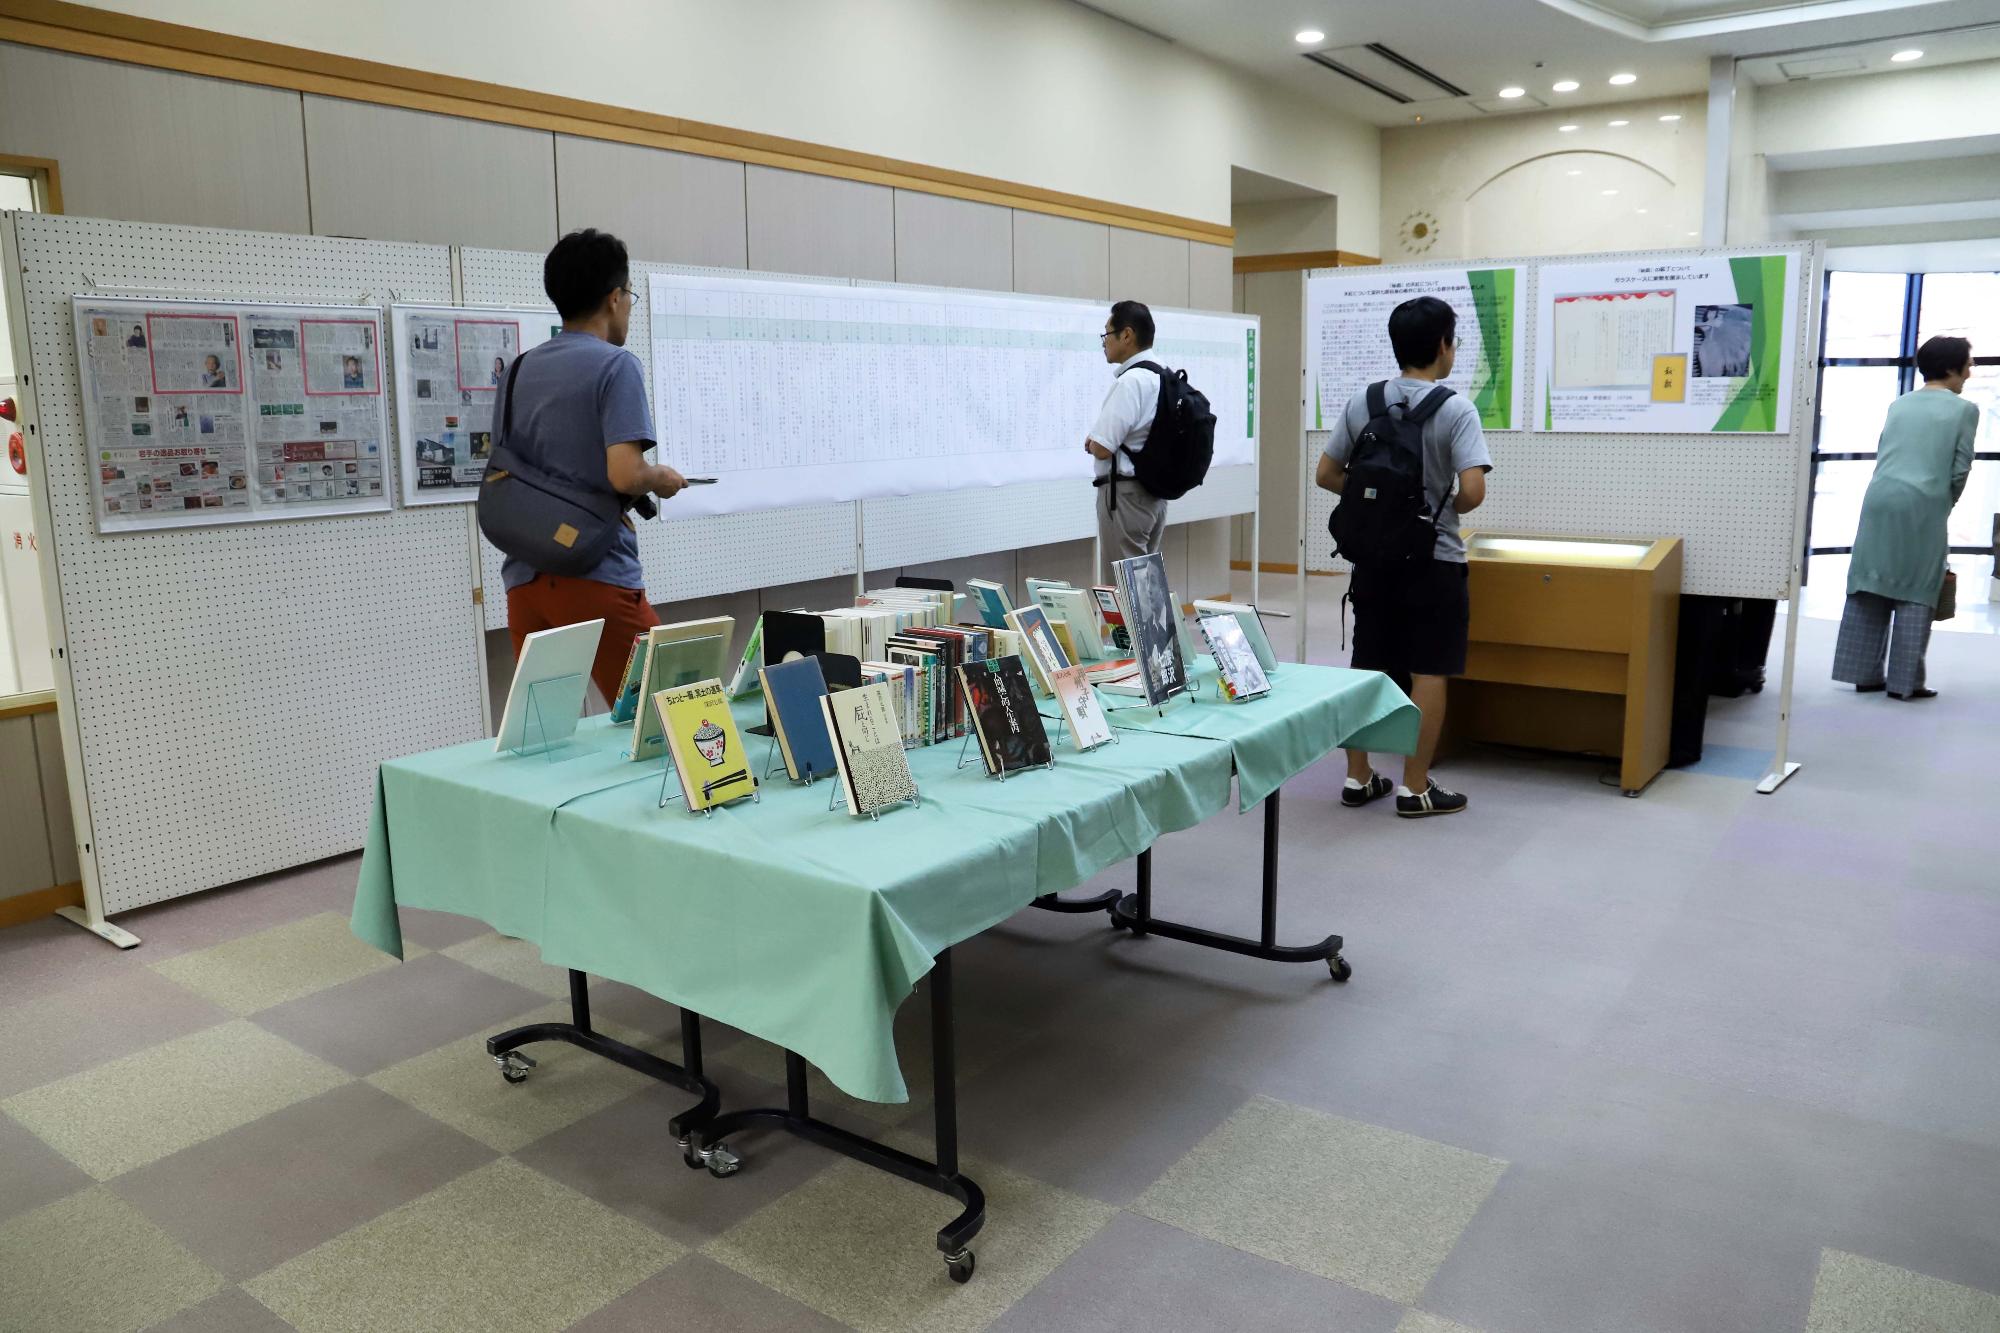 竜王図書館には保坂さんと深沢さんのコーナーが設置されています